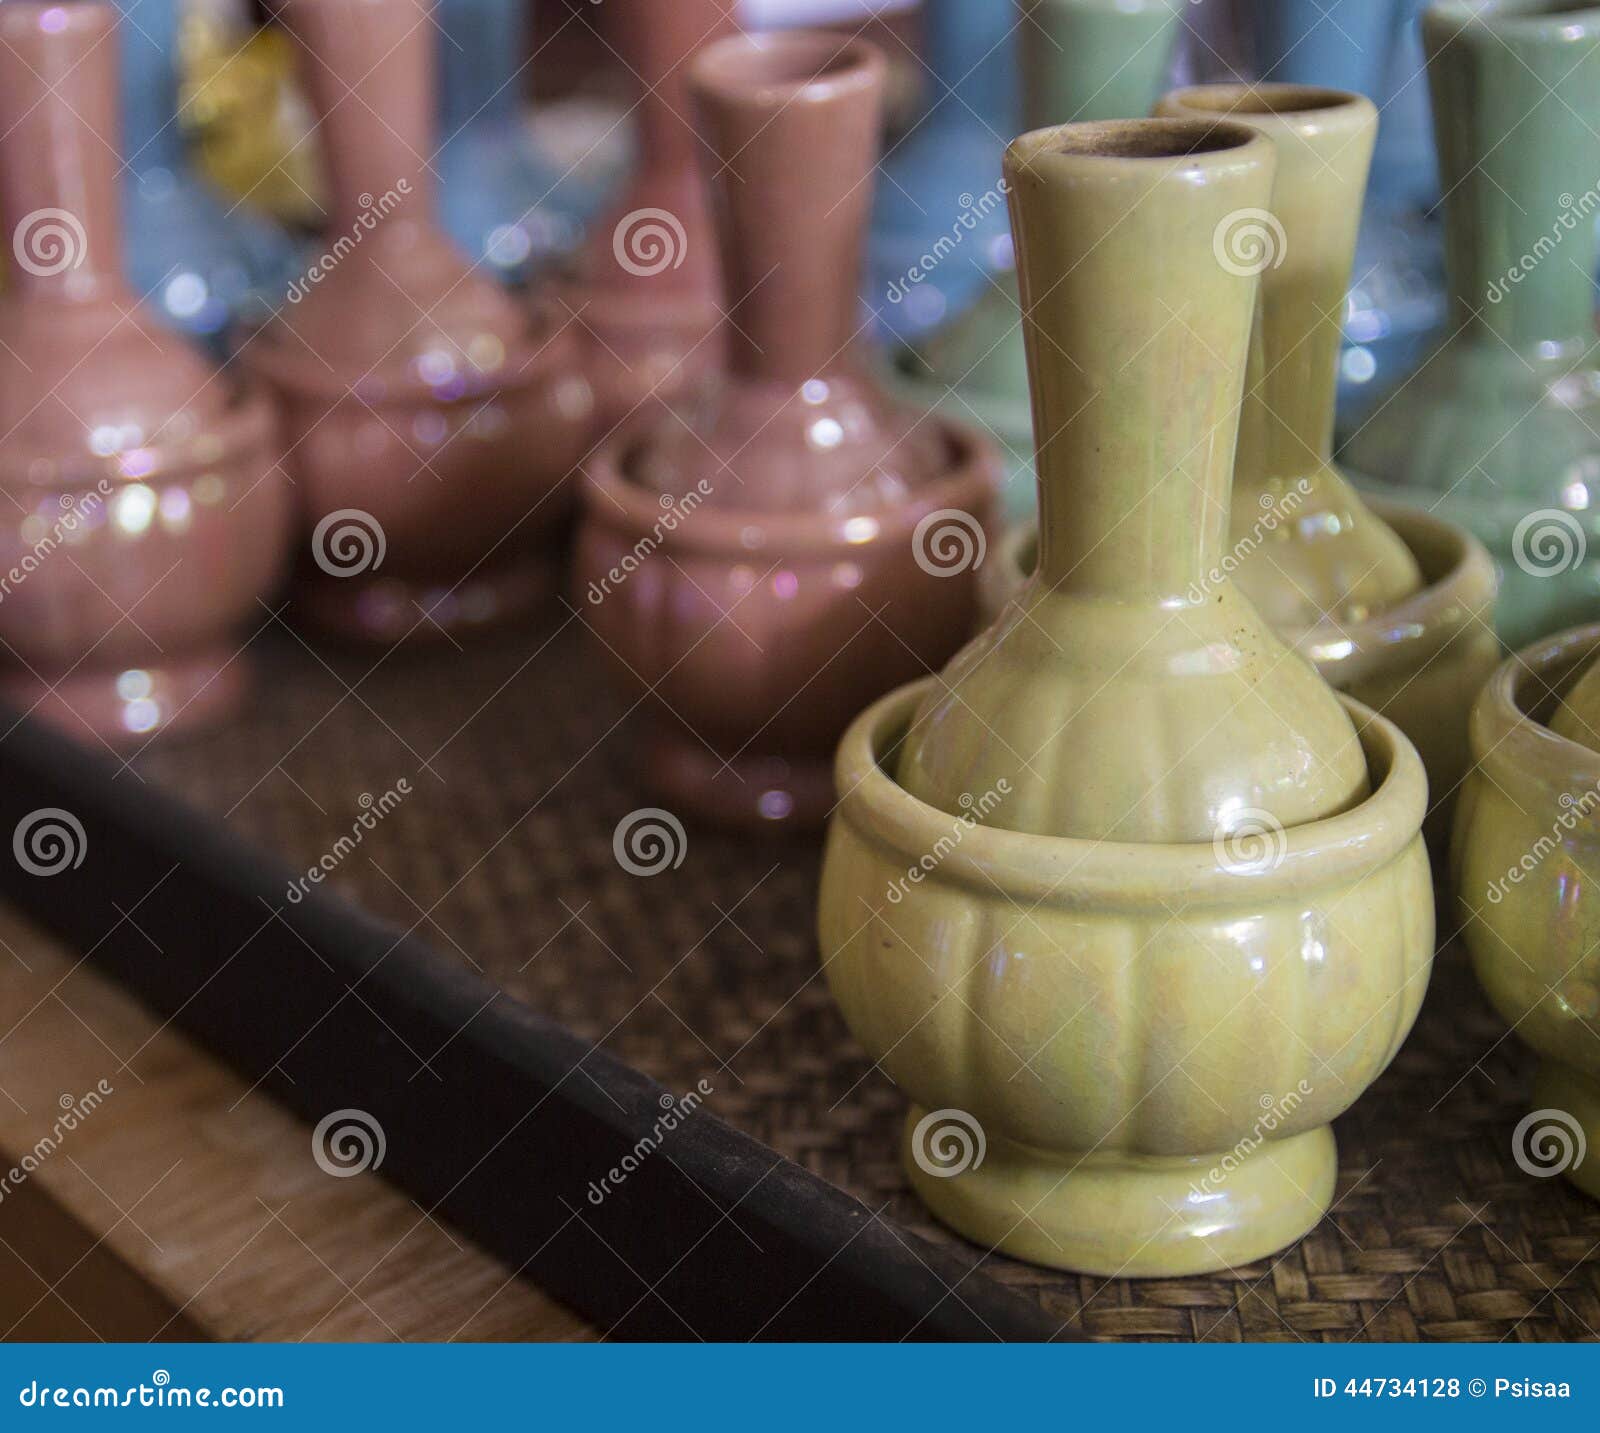 ceramic bottle for libation ceremony